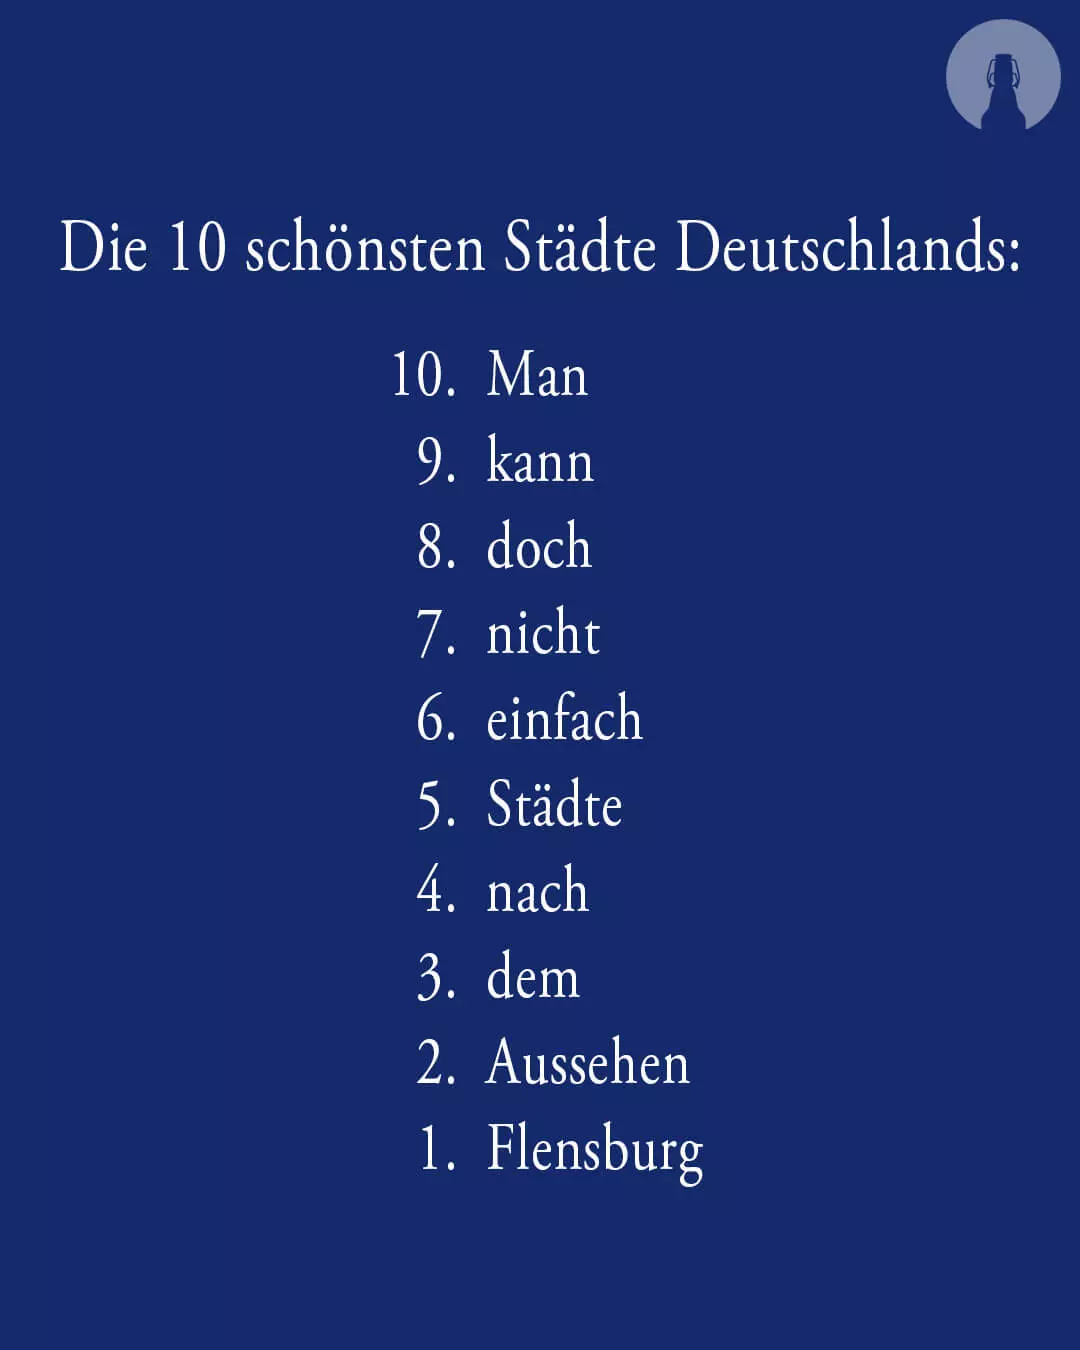 Weißer Text auf FLENS blauem Hintergrund: Die 10 schönsten Städte Deutschlands: 10. Man 9. kann 8. doch 7. nicht 6. einfach 5. Städte 4. nach 3. dem 2. Aussehen 1. Flensburg.